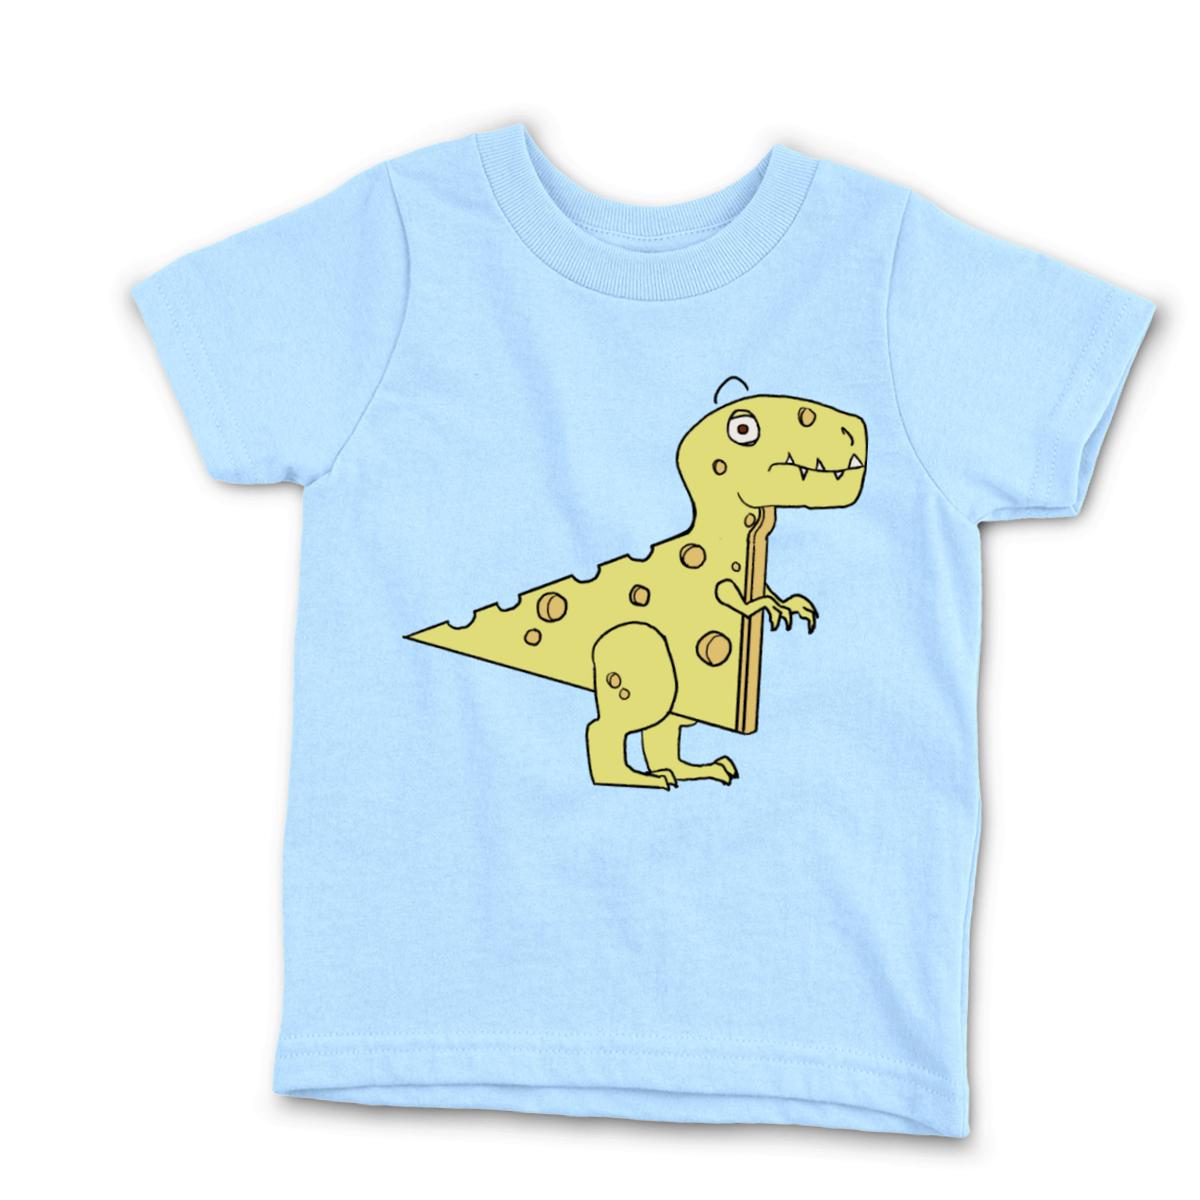 Cheeseosaurus Rex Kid's Tee Small light-blue